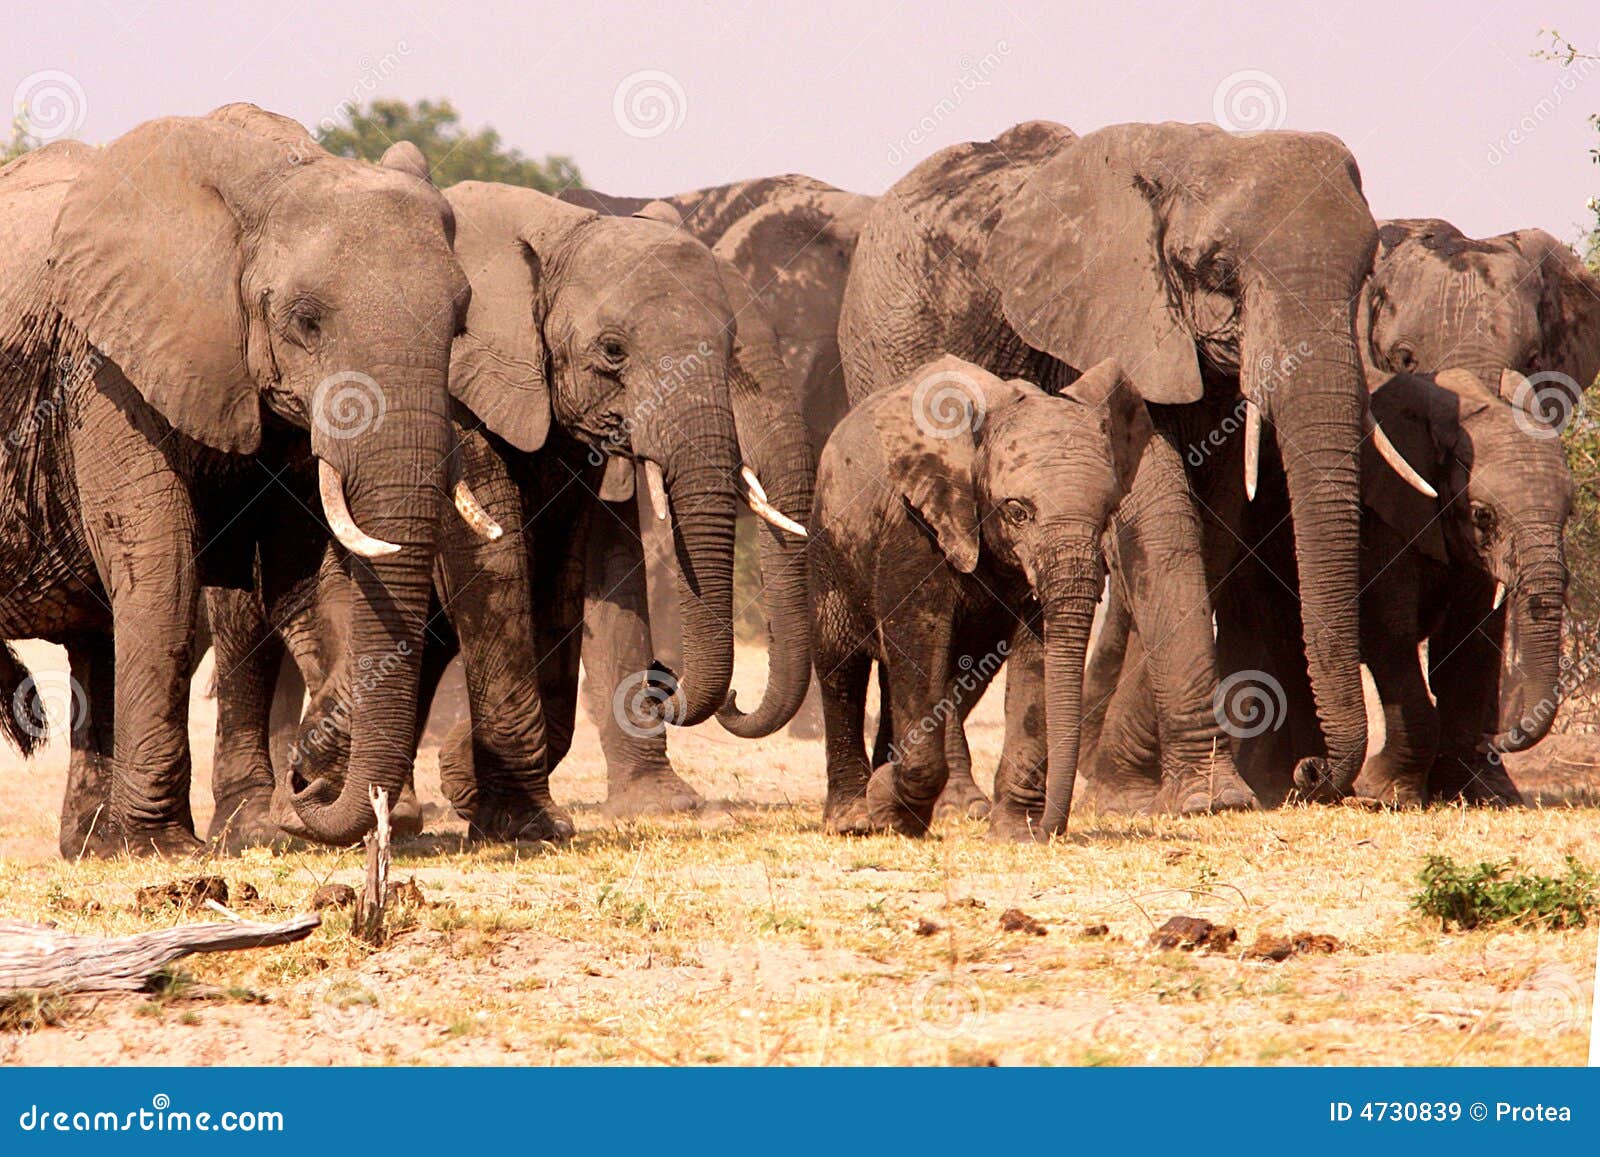 herd of elephants.